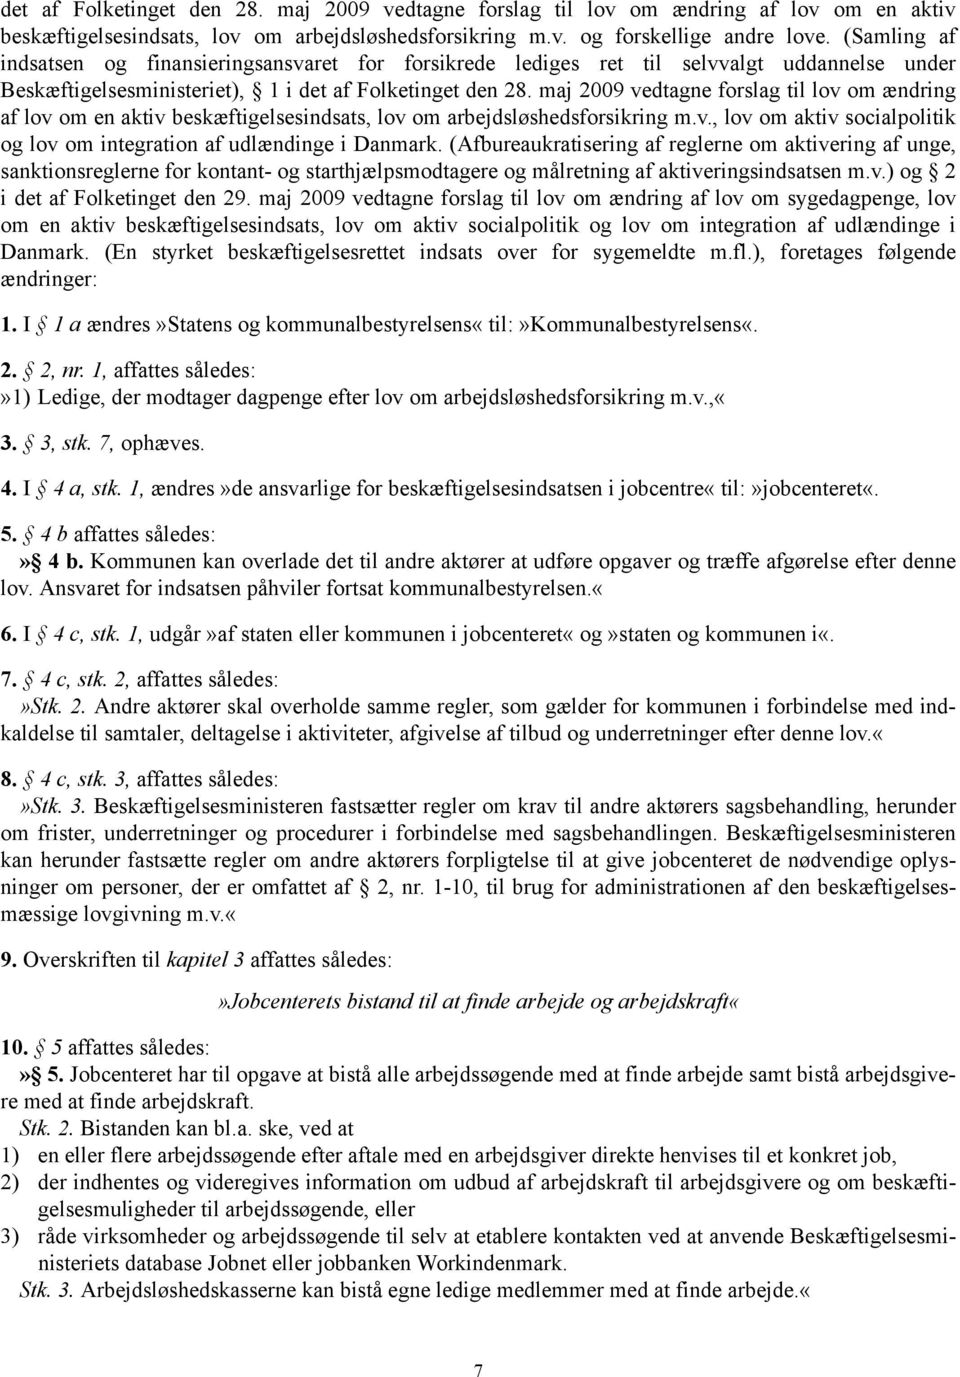 maj 2009 vedtagne forslag til lov om ændring af lov om en aktiv beskæftigelsesindsats, lov om arbejdsløshedsforsikring m.v., lov om aktiv socialpolitik og lov om integration af udlændinge i Danmark.